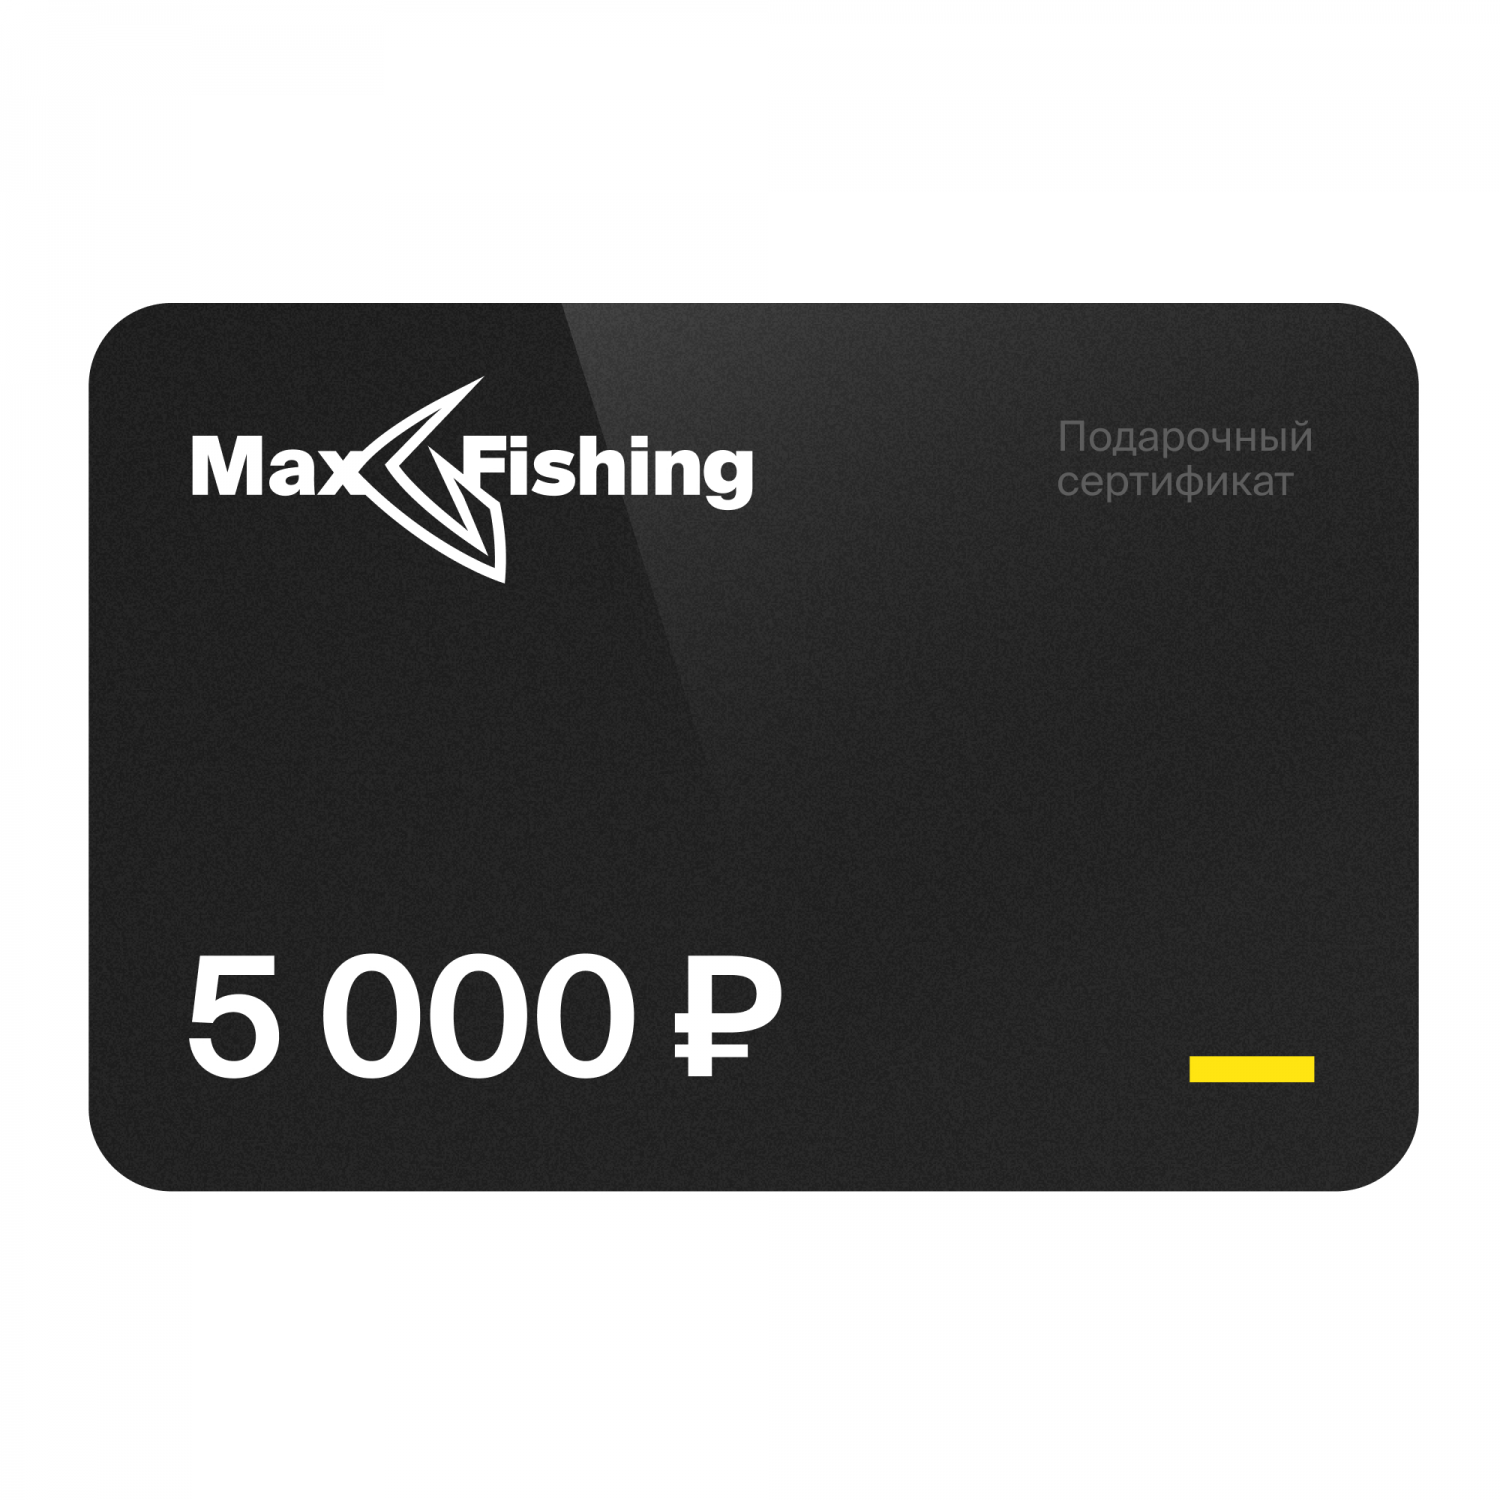 Подарочный сертификат MaxFishing 5 000 ₽ виртуальный подарочный сертификат 3 000